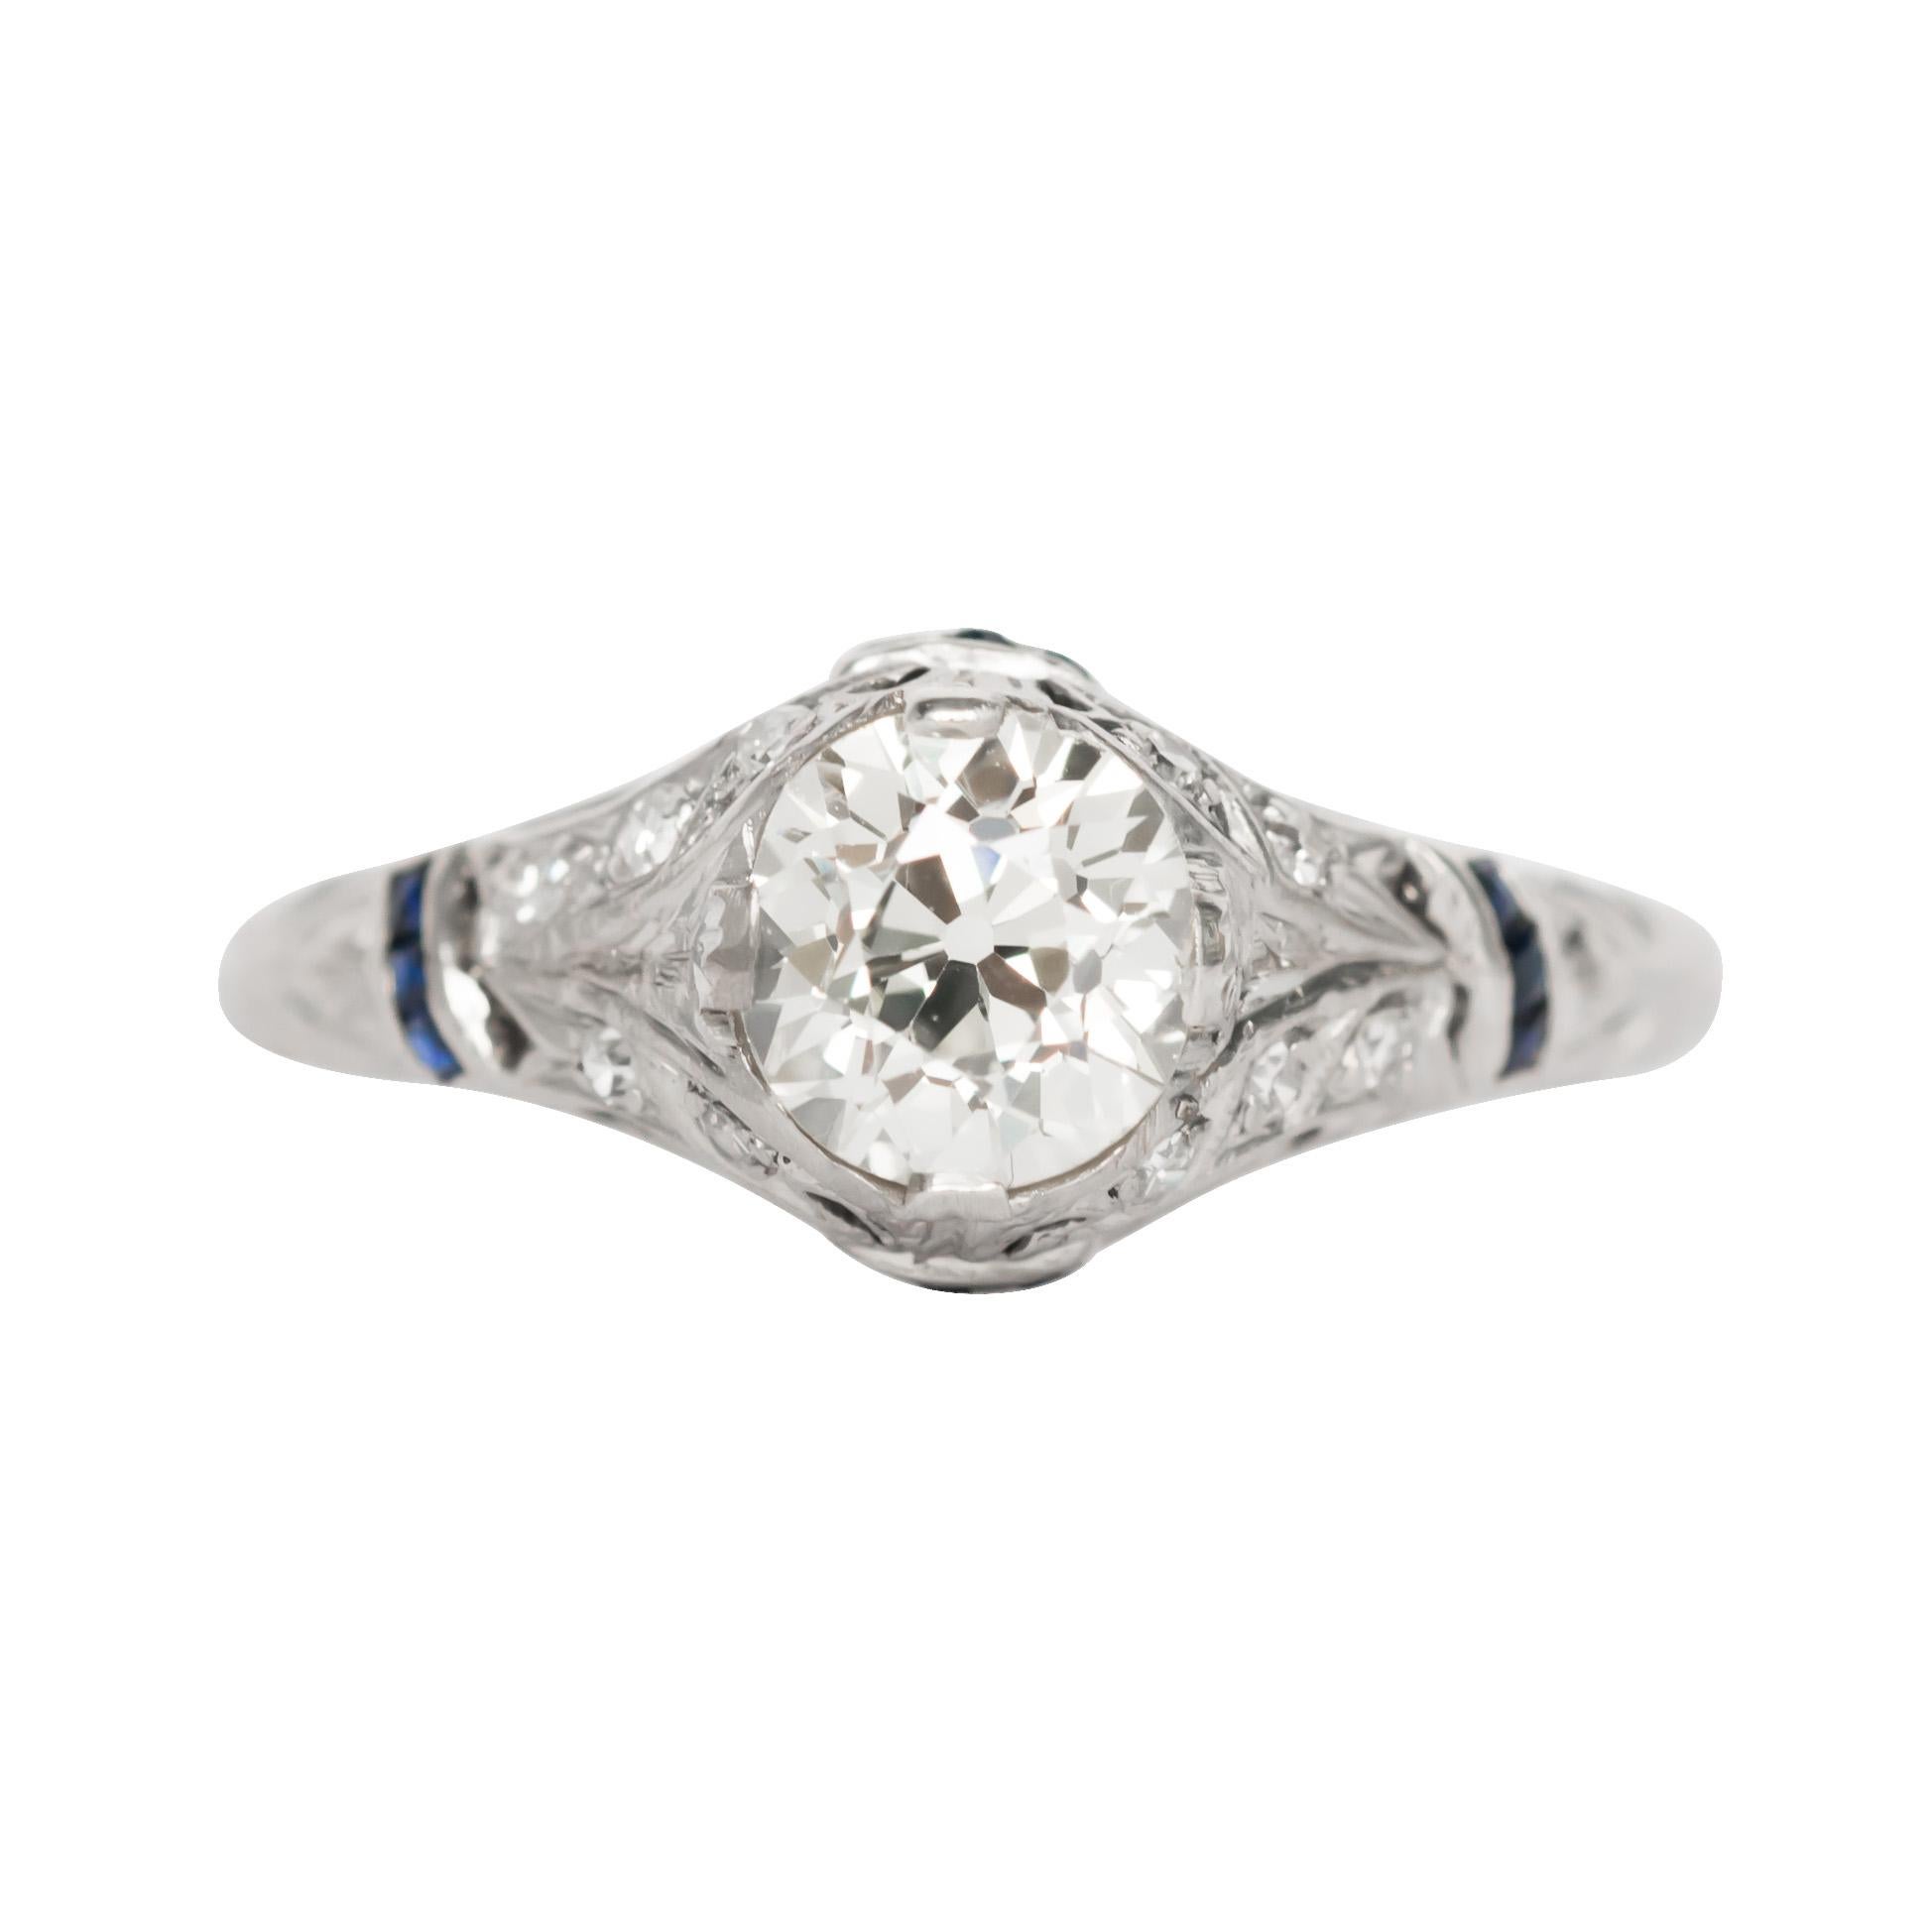 GIA Certified 1.11 Carat Diamond Platinum Engagement Ring